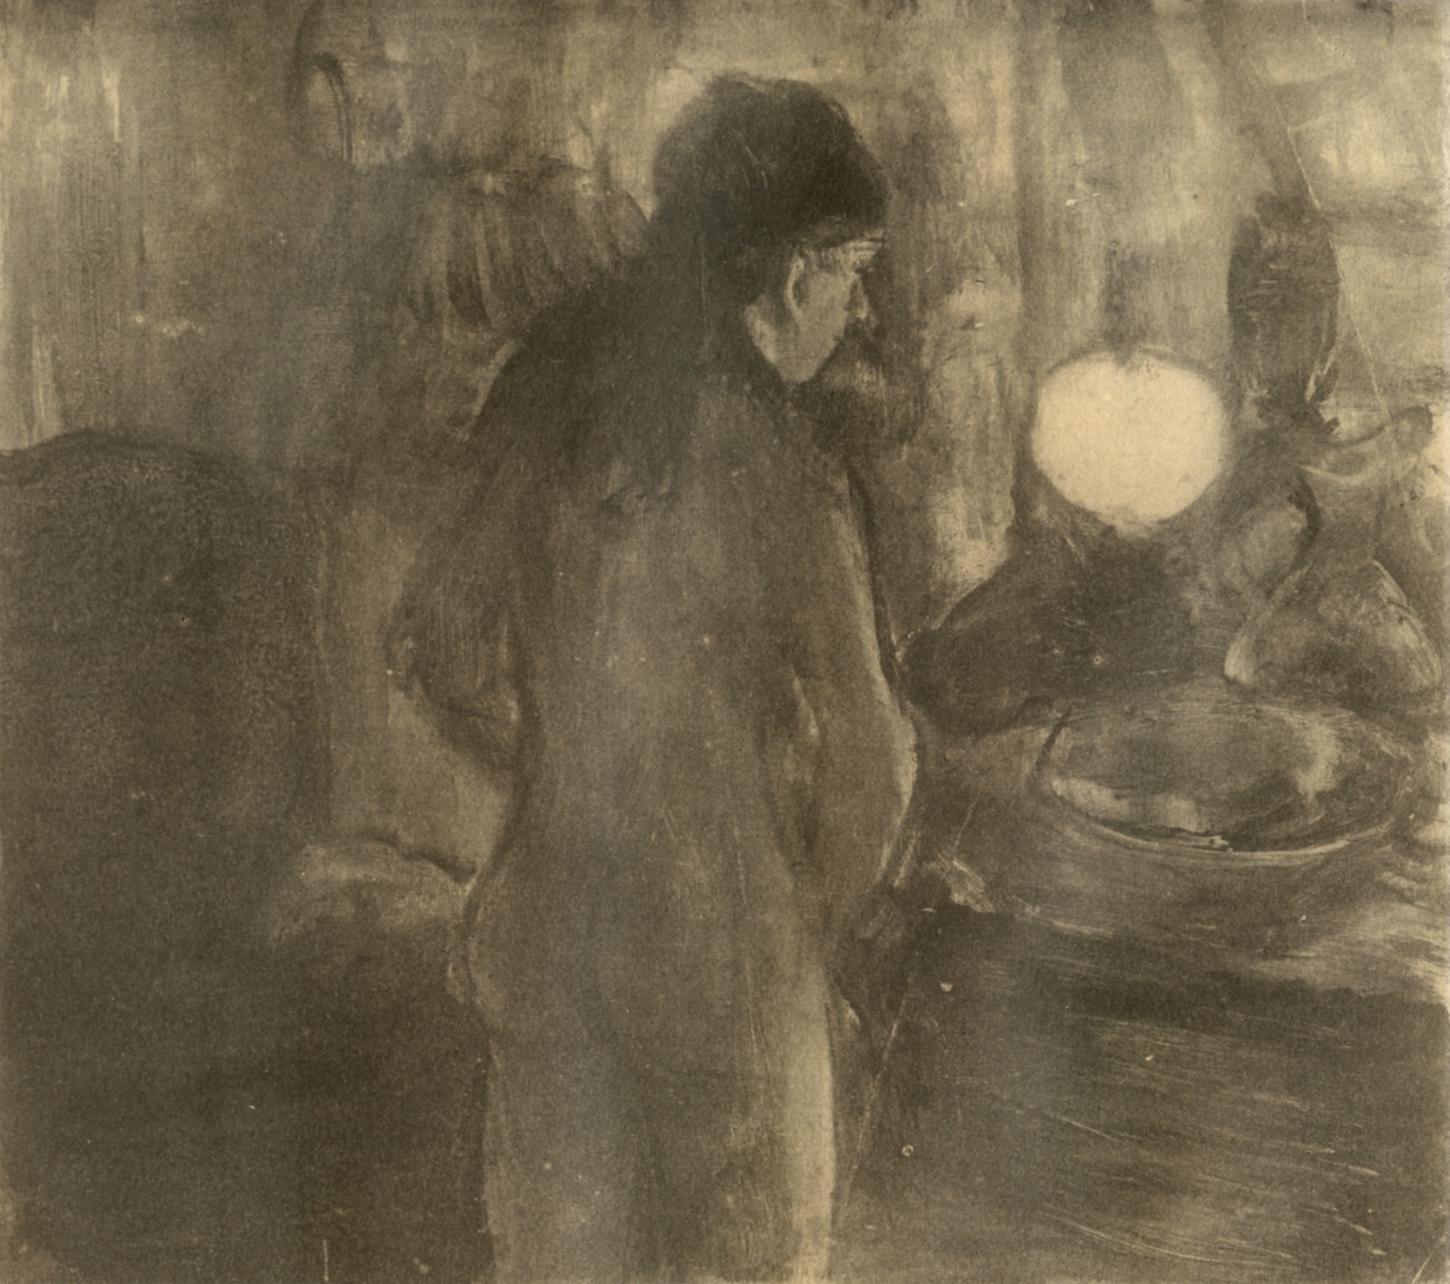 Degas, La Toilette, Les Monotypes (after)